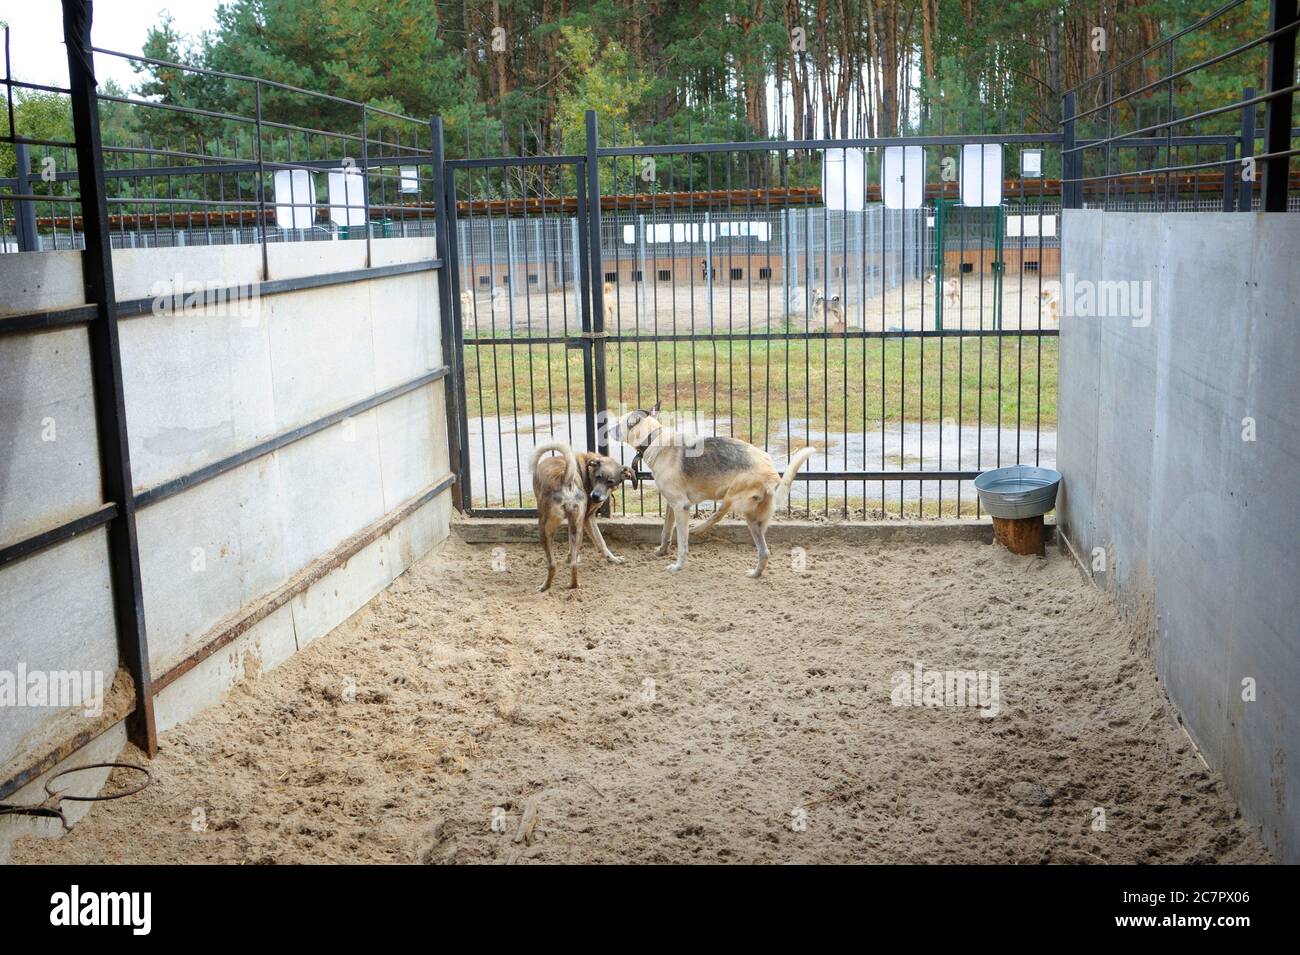 Kommunales Tierheim: hangar mit Reihe von Volieren im Innenbereich, streunende Hunde, die hinter Gittern bellten Stockfoto